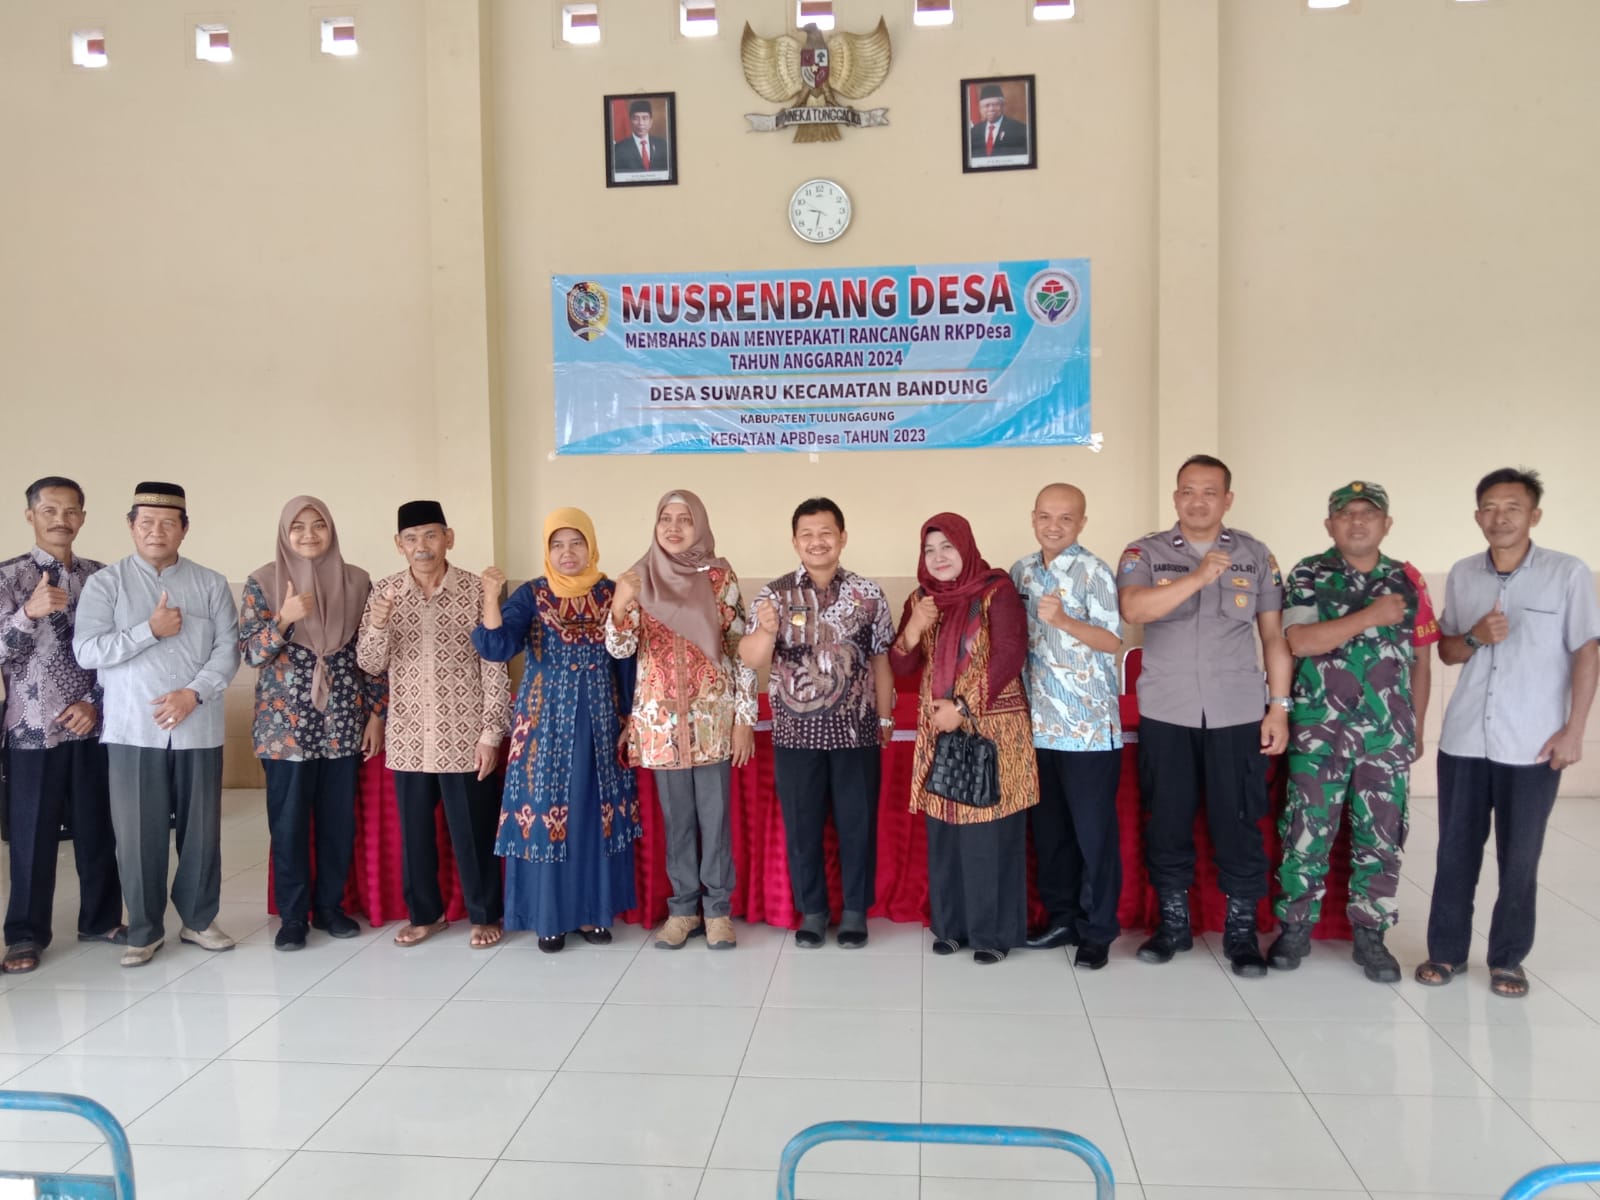 Dalam Musrenbang Desa Suwaru, Camat Bandung Kenalkan Pejabat Baru Di Lingkup Pemerintah Kecamatan Bandung Kabupaten Tulungagung.